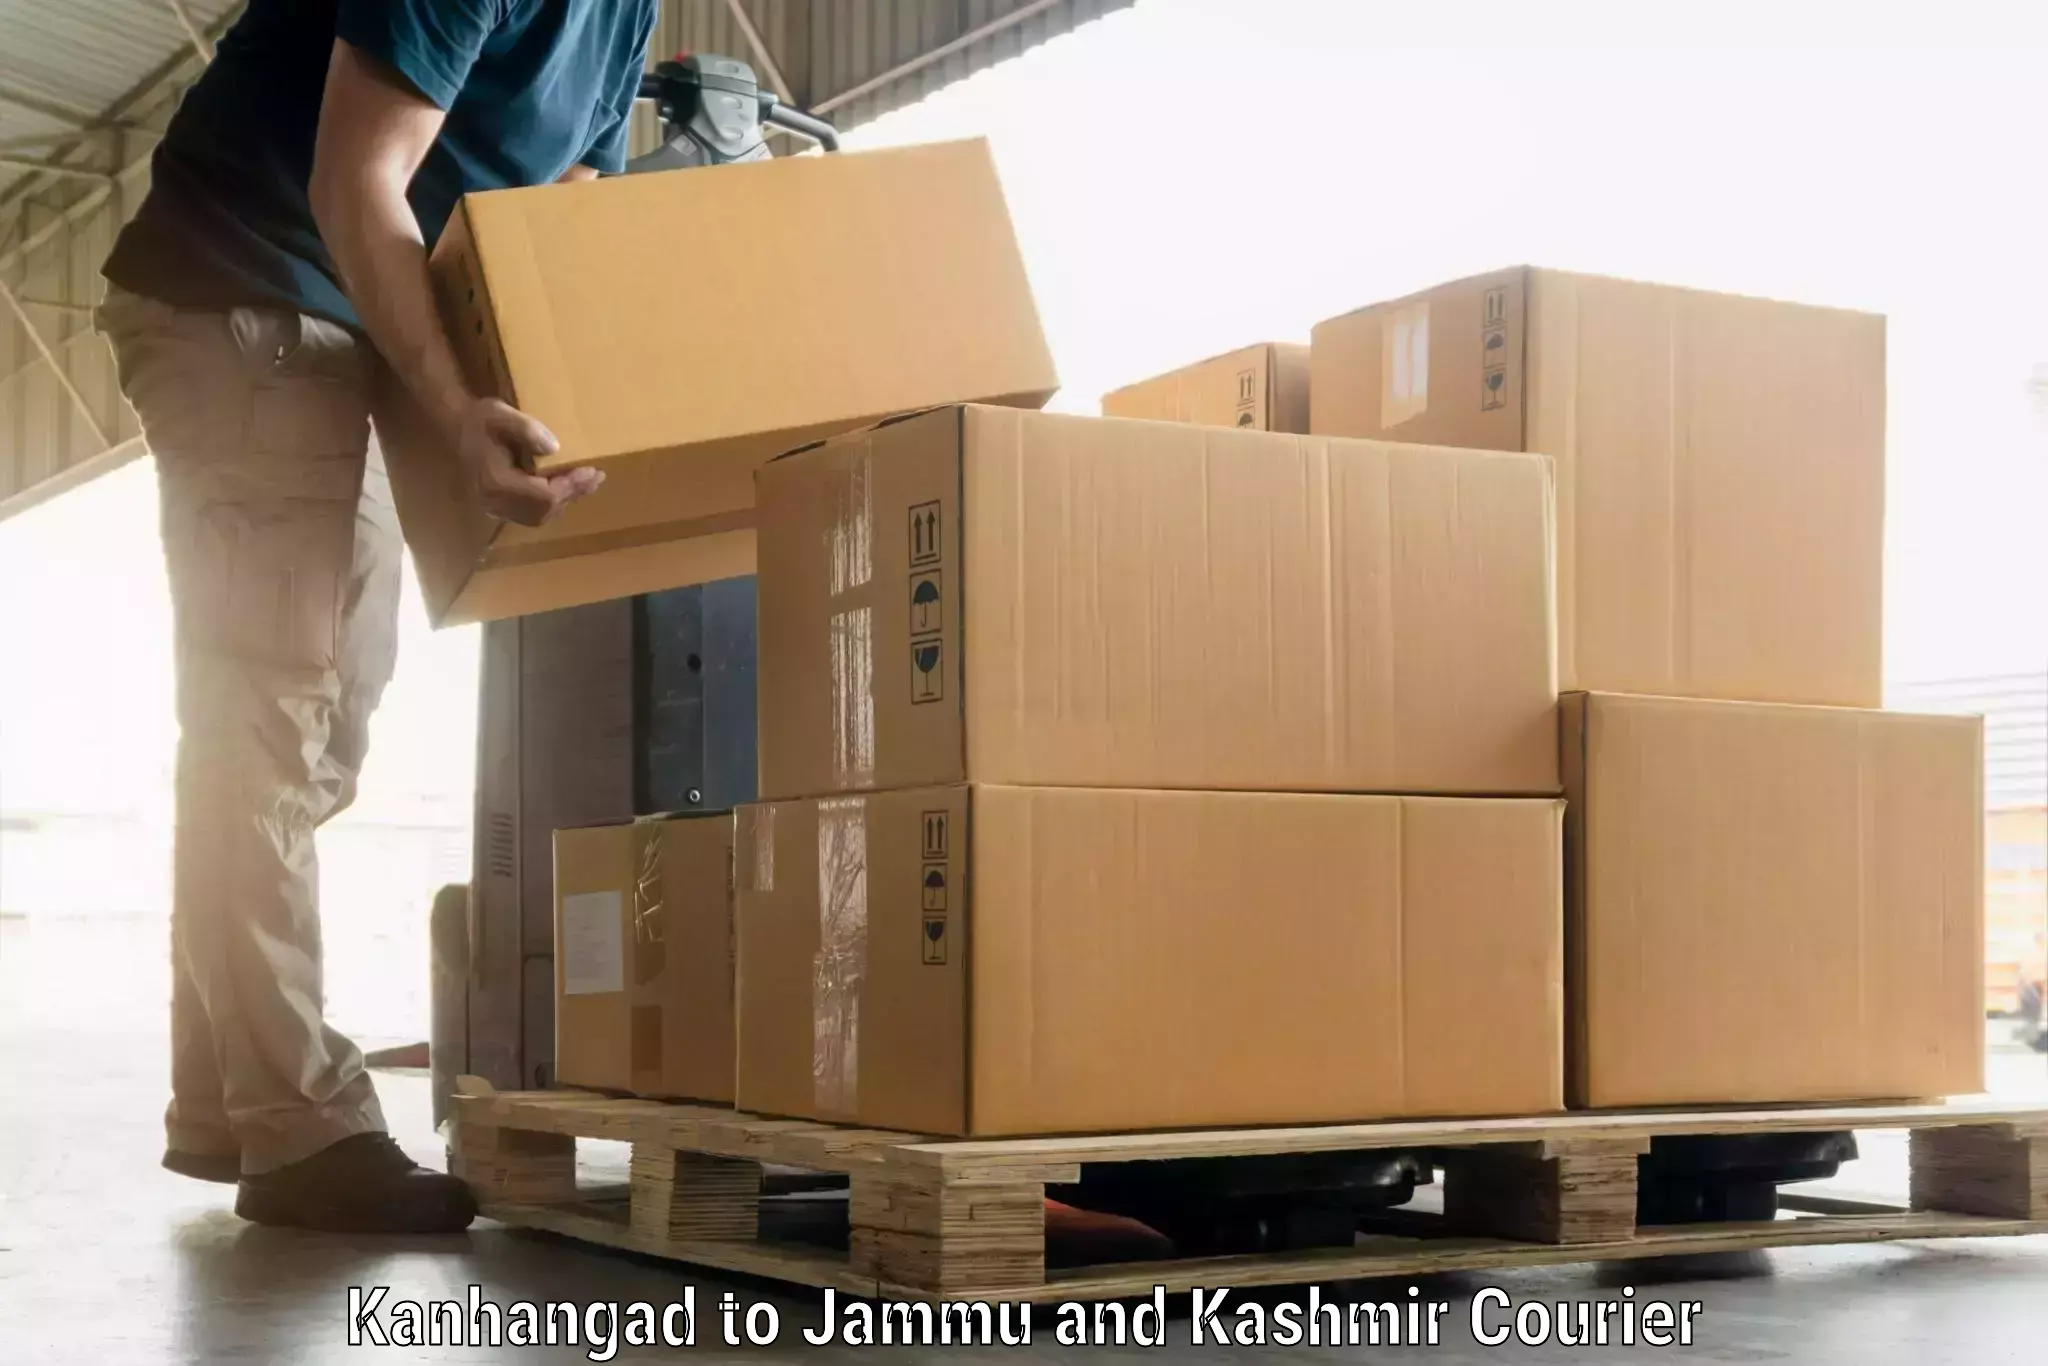 Baggage transport estimate Kanhangad to Katra